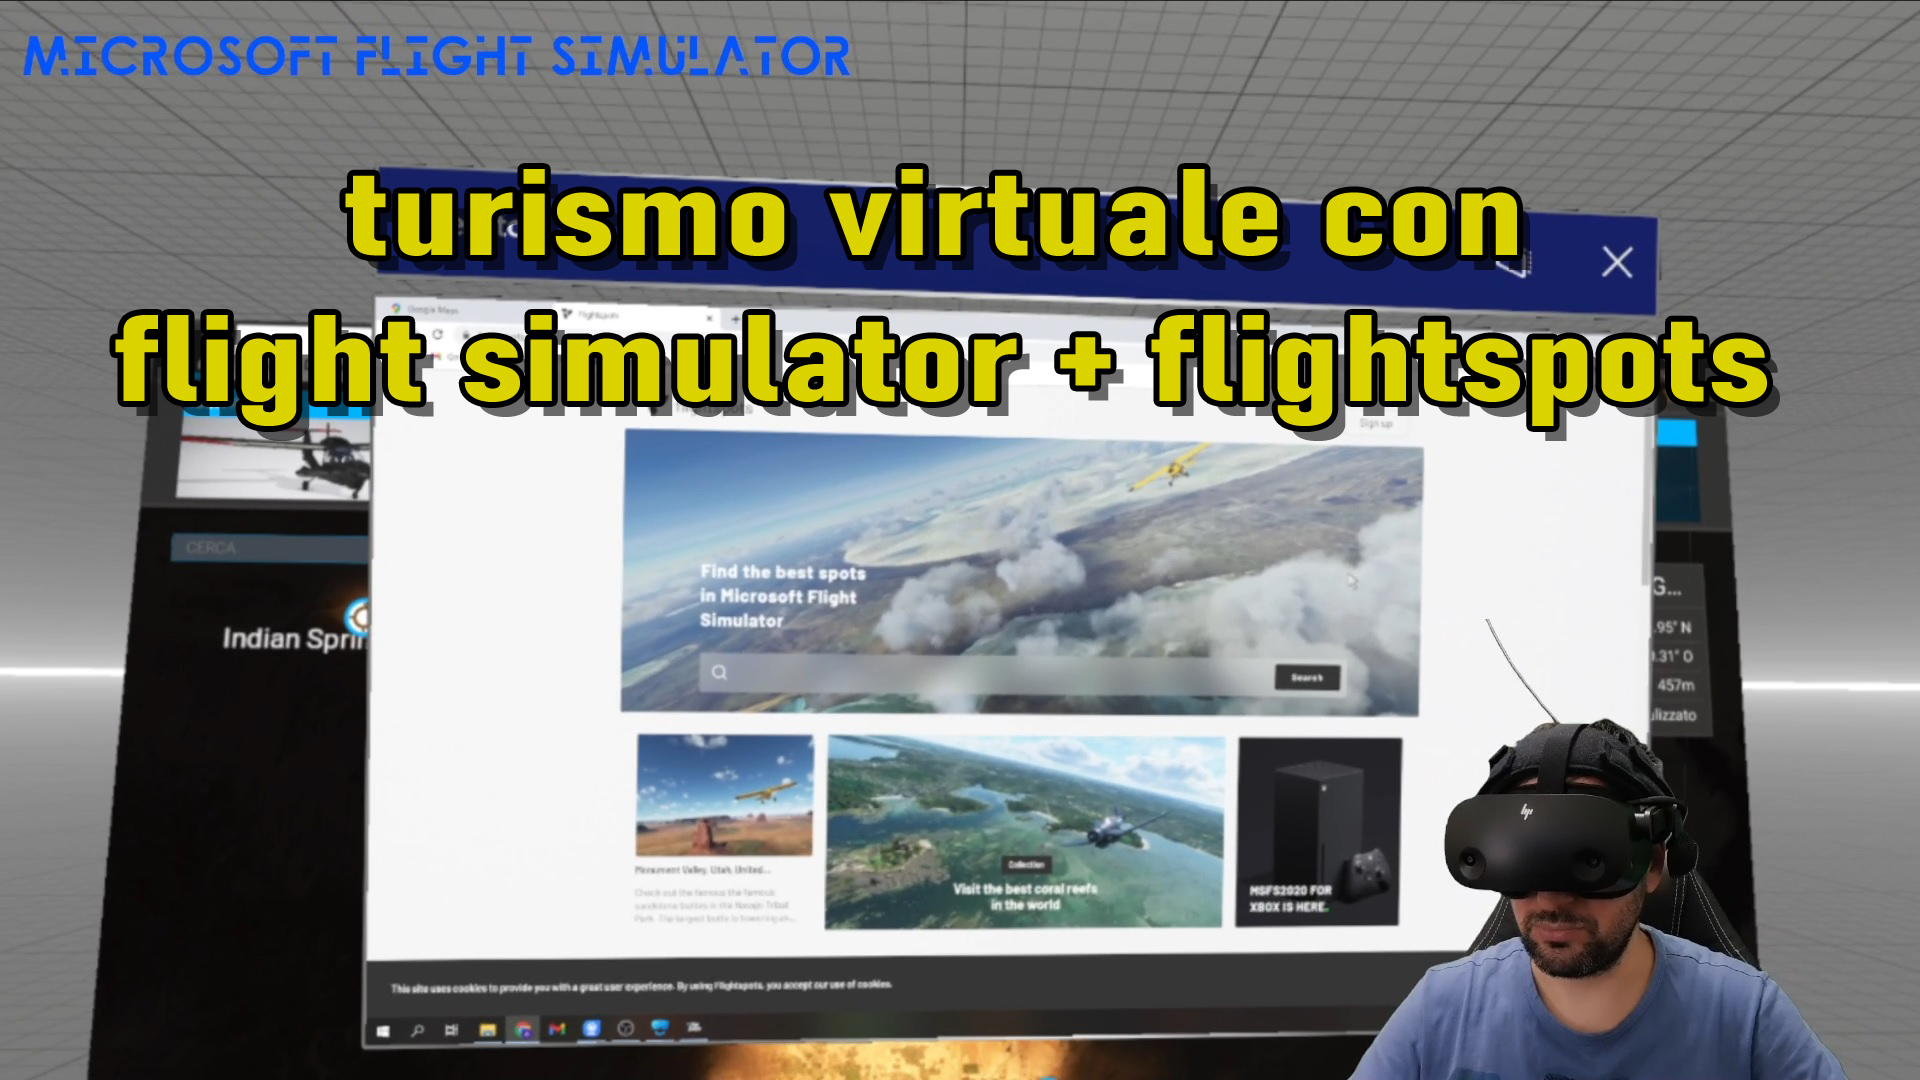 Come fare turismo in realtà virtuale con Microsoft Flight Simulator e Flightspots